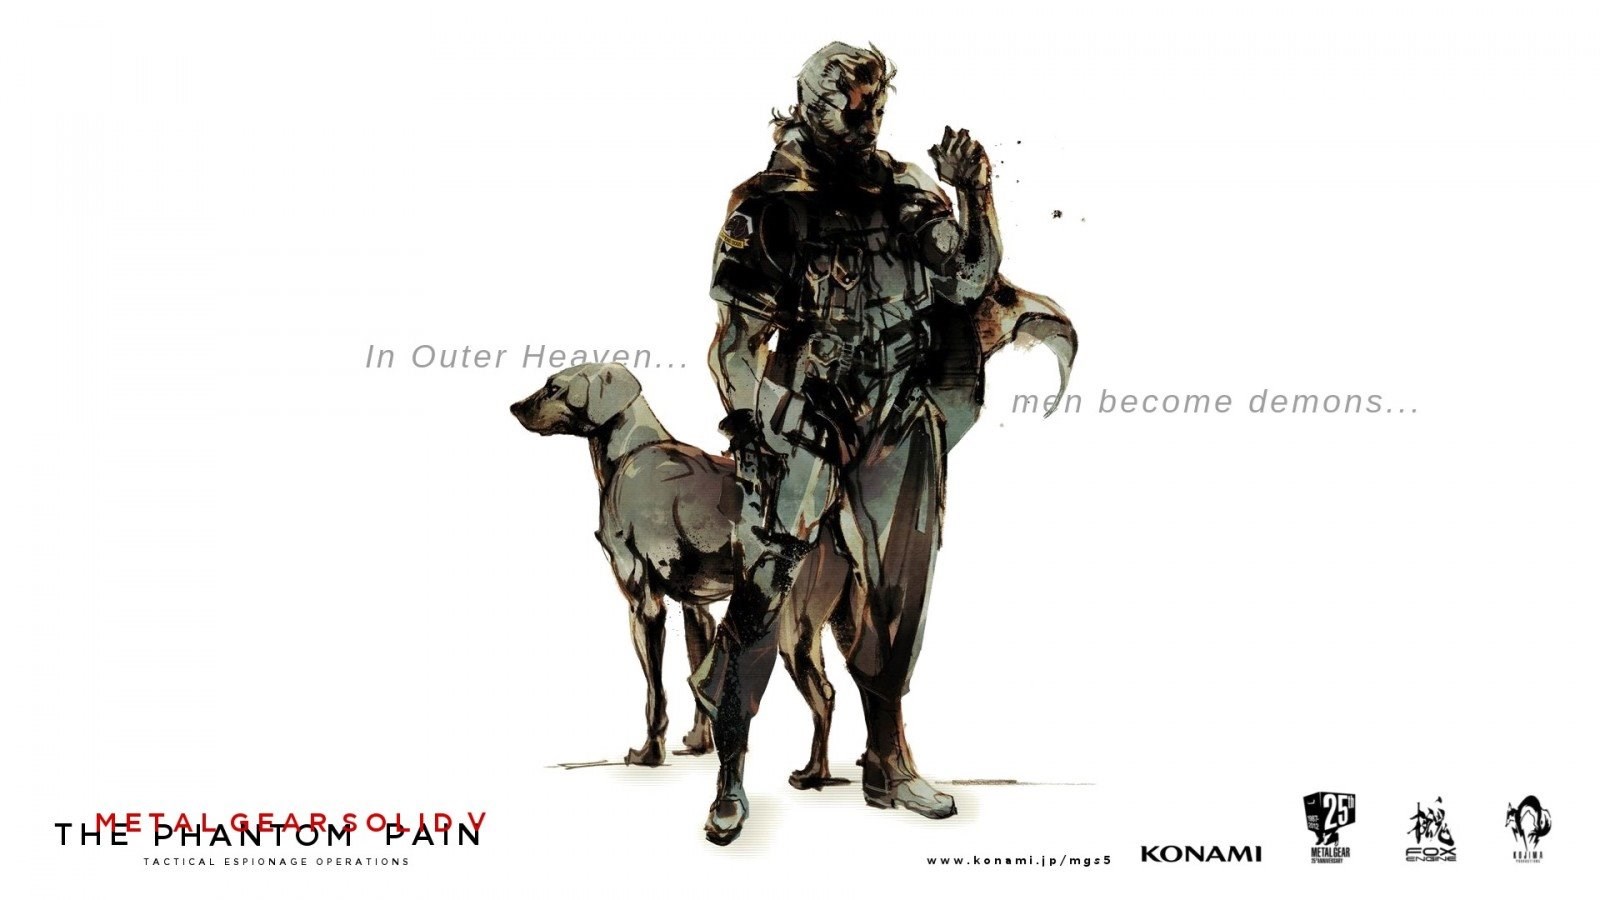 Download Wallpaper Outer Heaven, Konami, Yoji Shinkawa, Games. Desktop Background